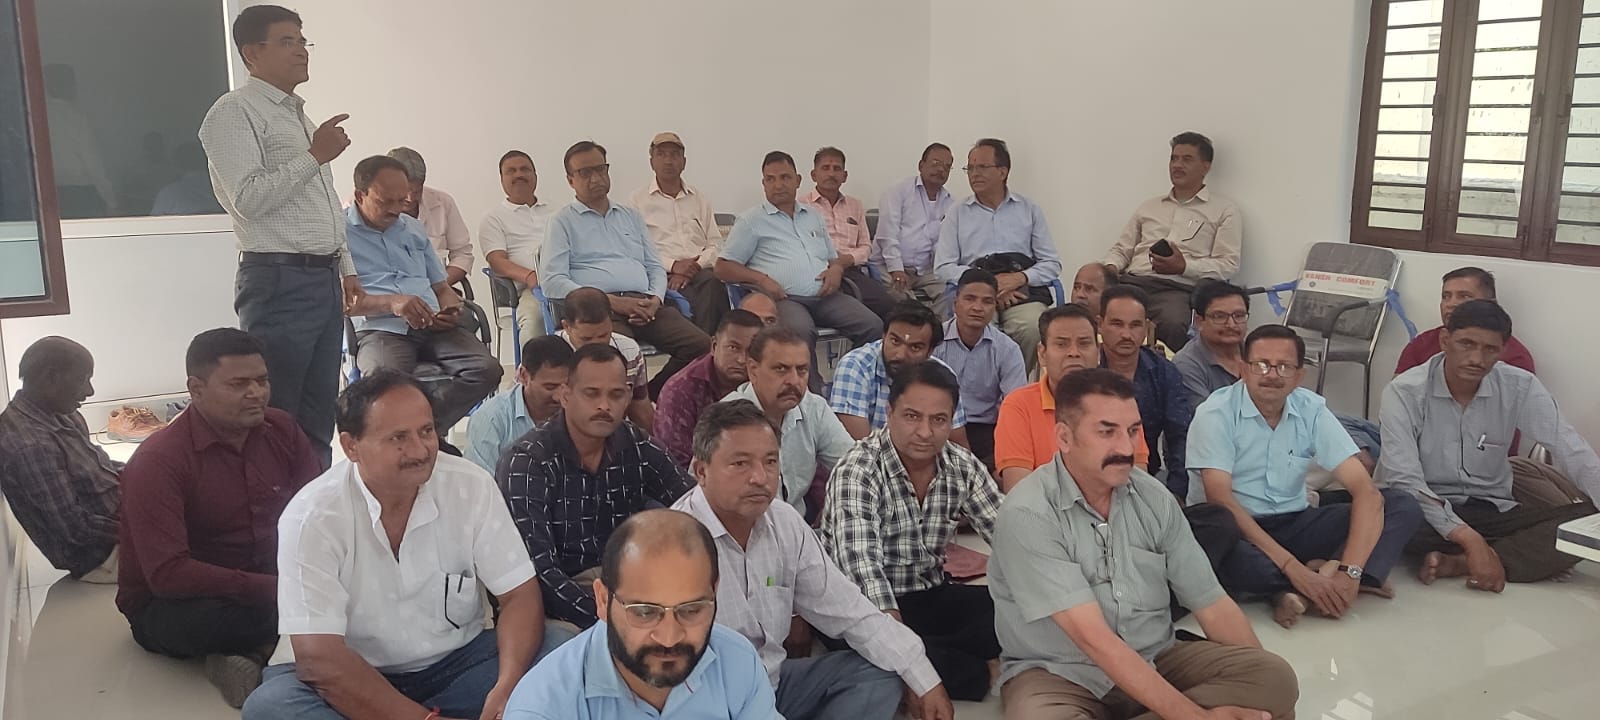 उत्तराखंड जल संस्थान कर्मचारी संगठन उत्तराखंड प्रदेश की प्रांतीय बैठक संपन्न